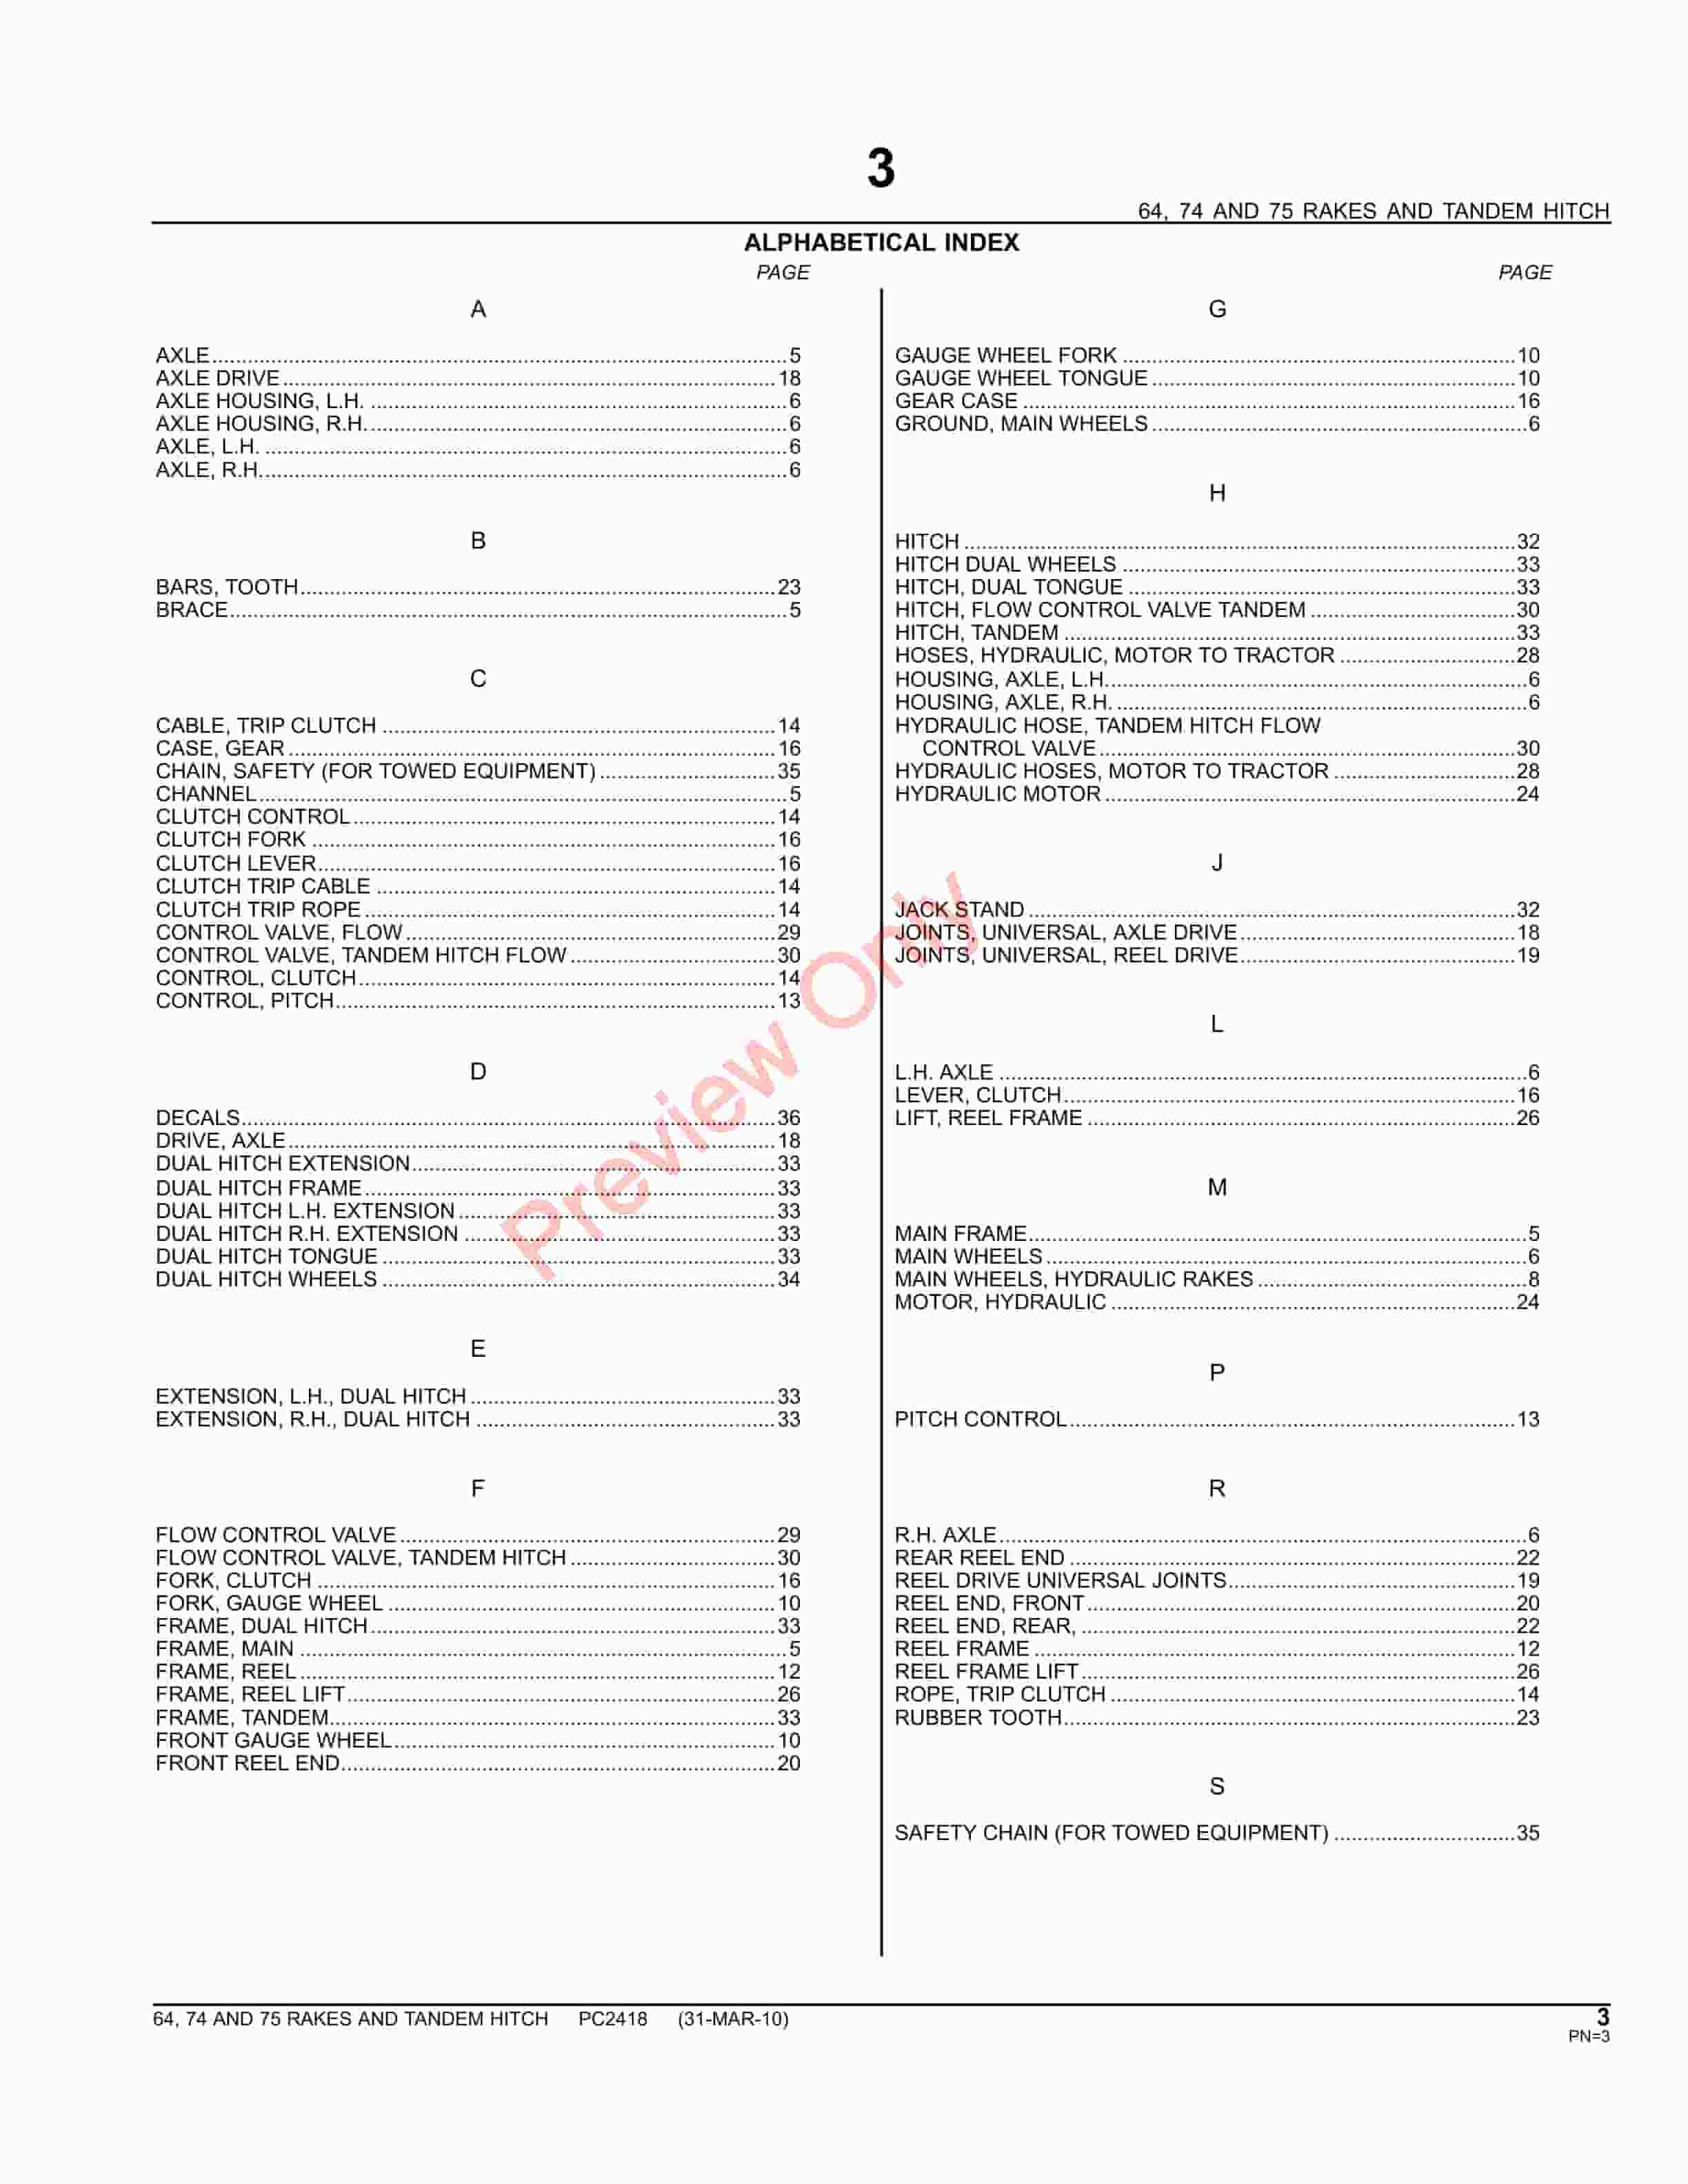 John Deere 64, 74, 75 Rakes and Tandem Hitch Parts Catalog PC2418 09MAY11-5